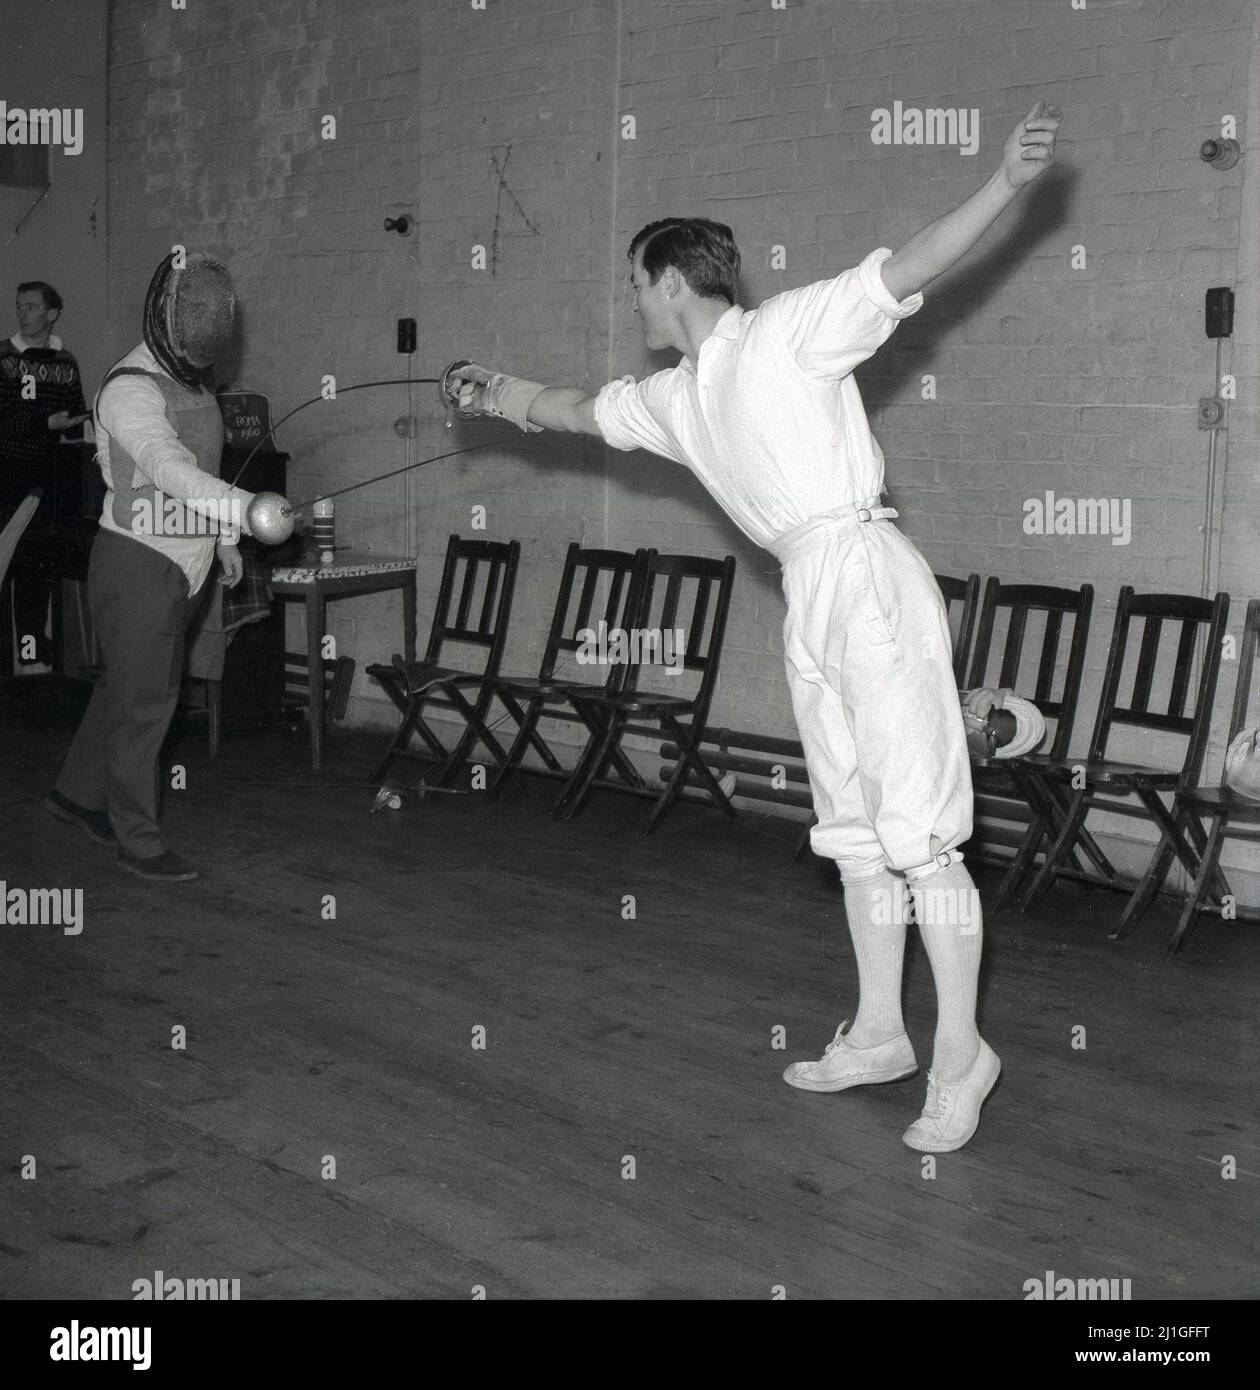 1960s, storico, classe di scherma, all'interno di una sala, uno studente  maschile che indossa tradizionali breches scherma, praticando con un  istruttore o insegnante di scherma, Università di Oxford, Inghilterra,  Regno Unito. Stanno